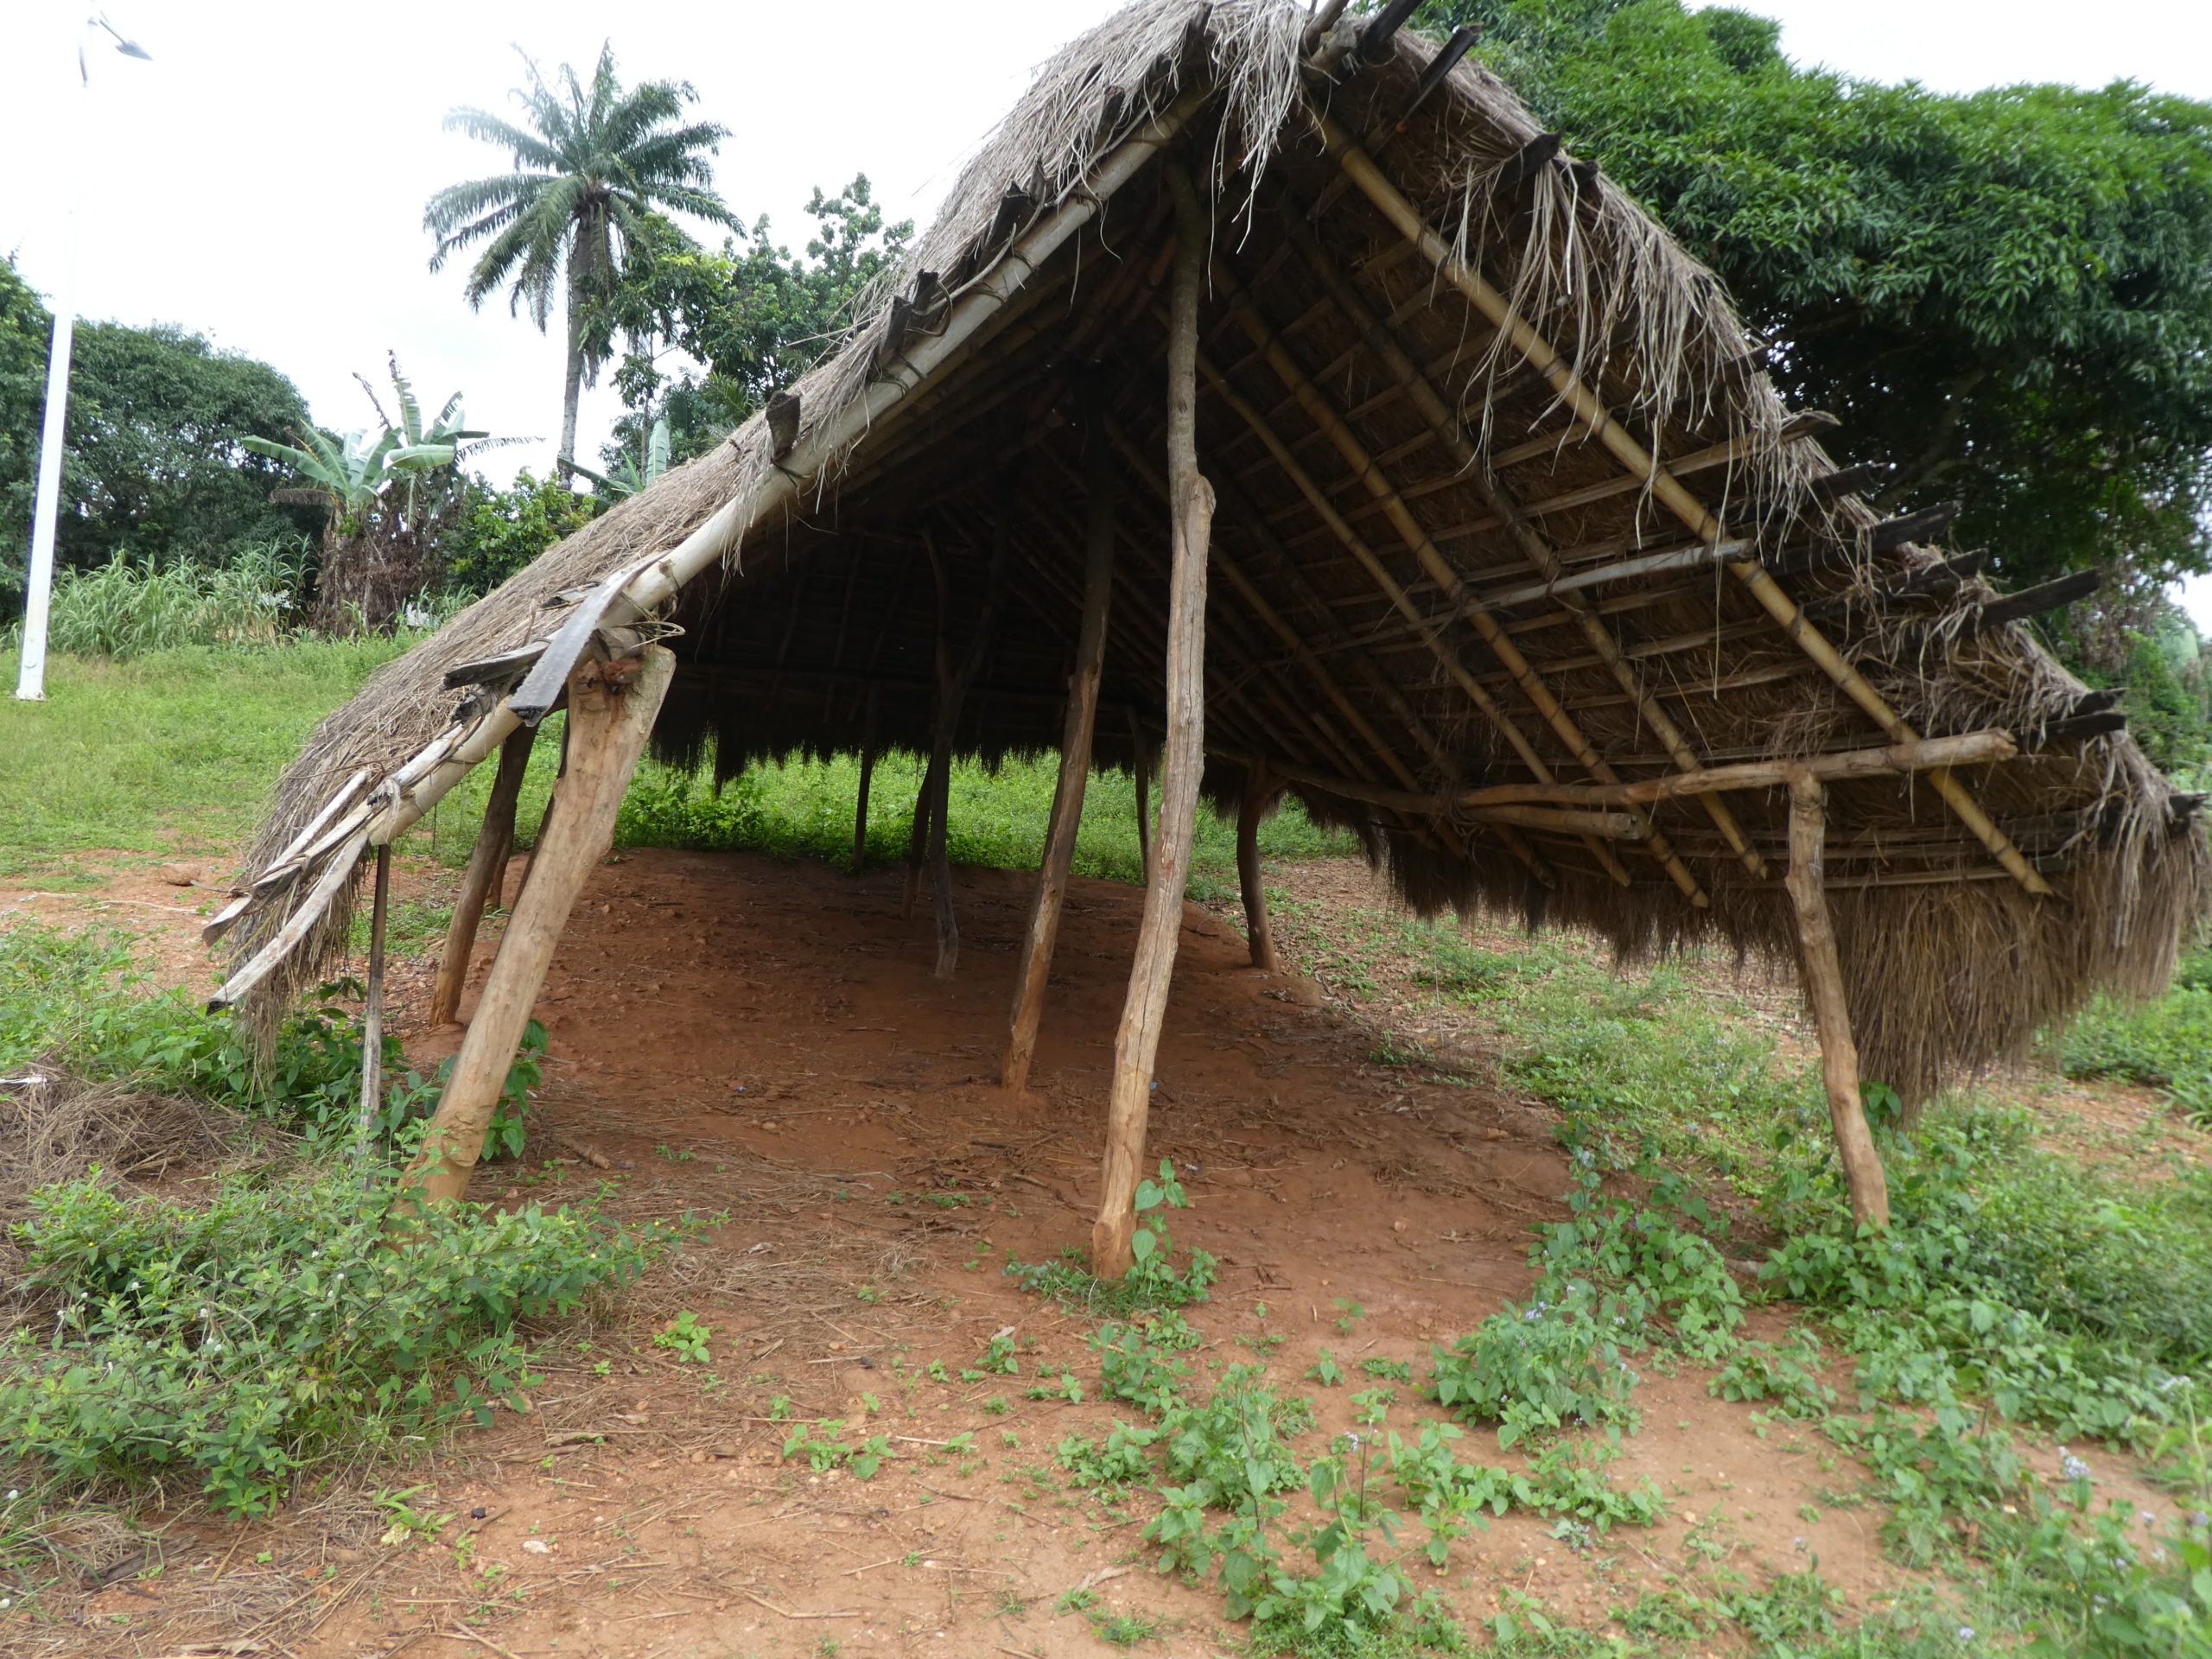 Ecole togolaise sur le point de s'effondrer construite en paille et bois